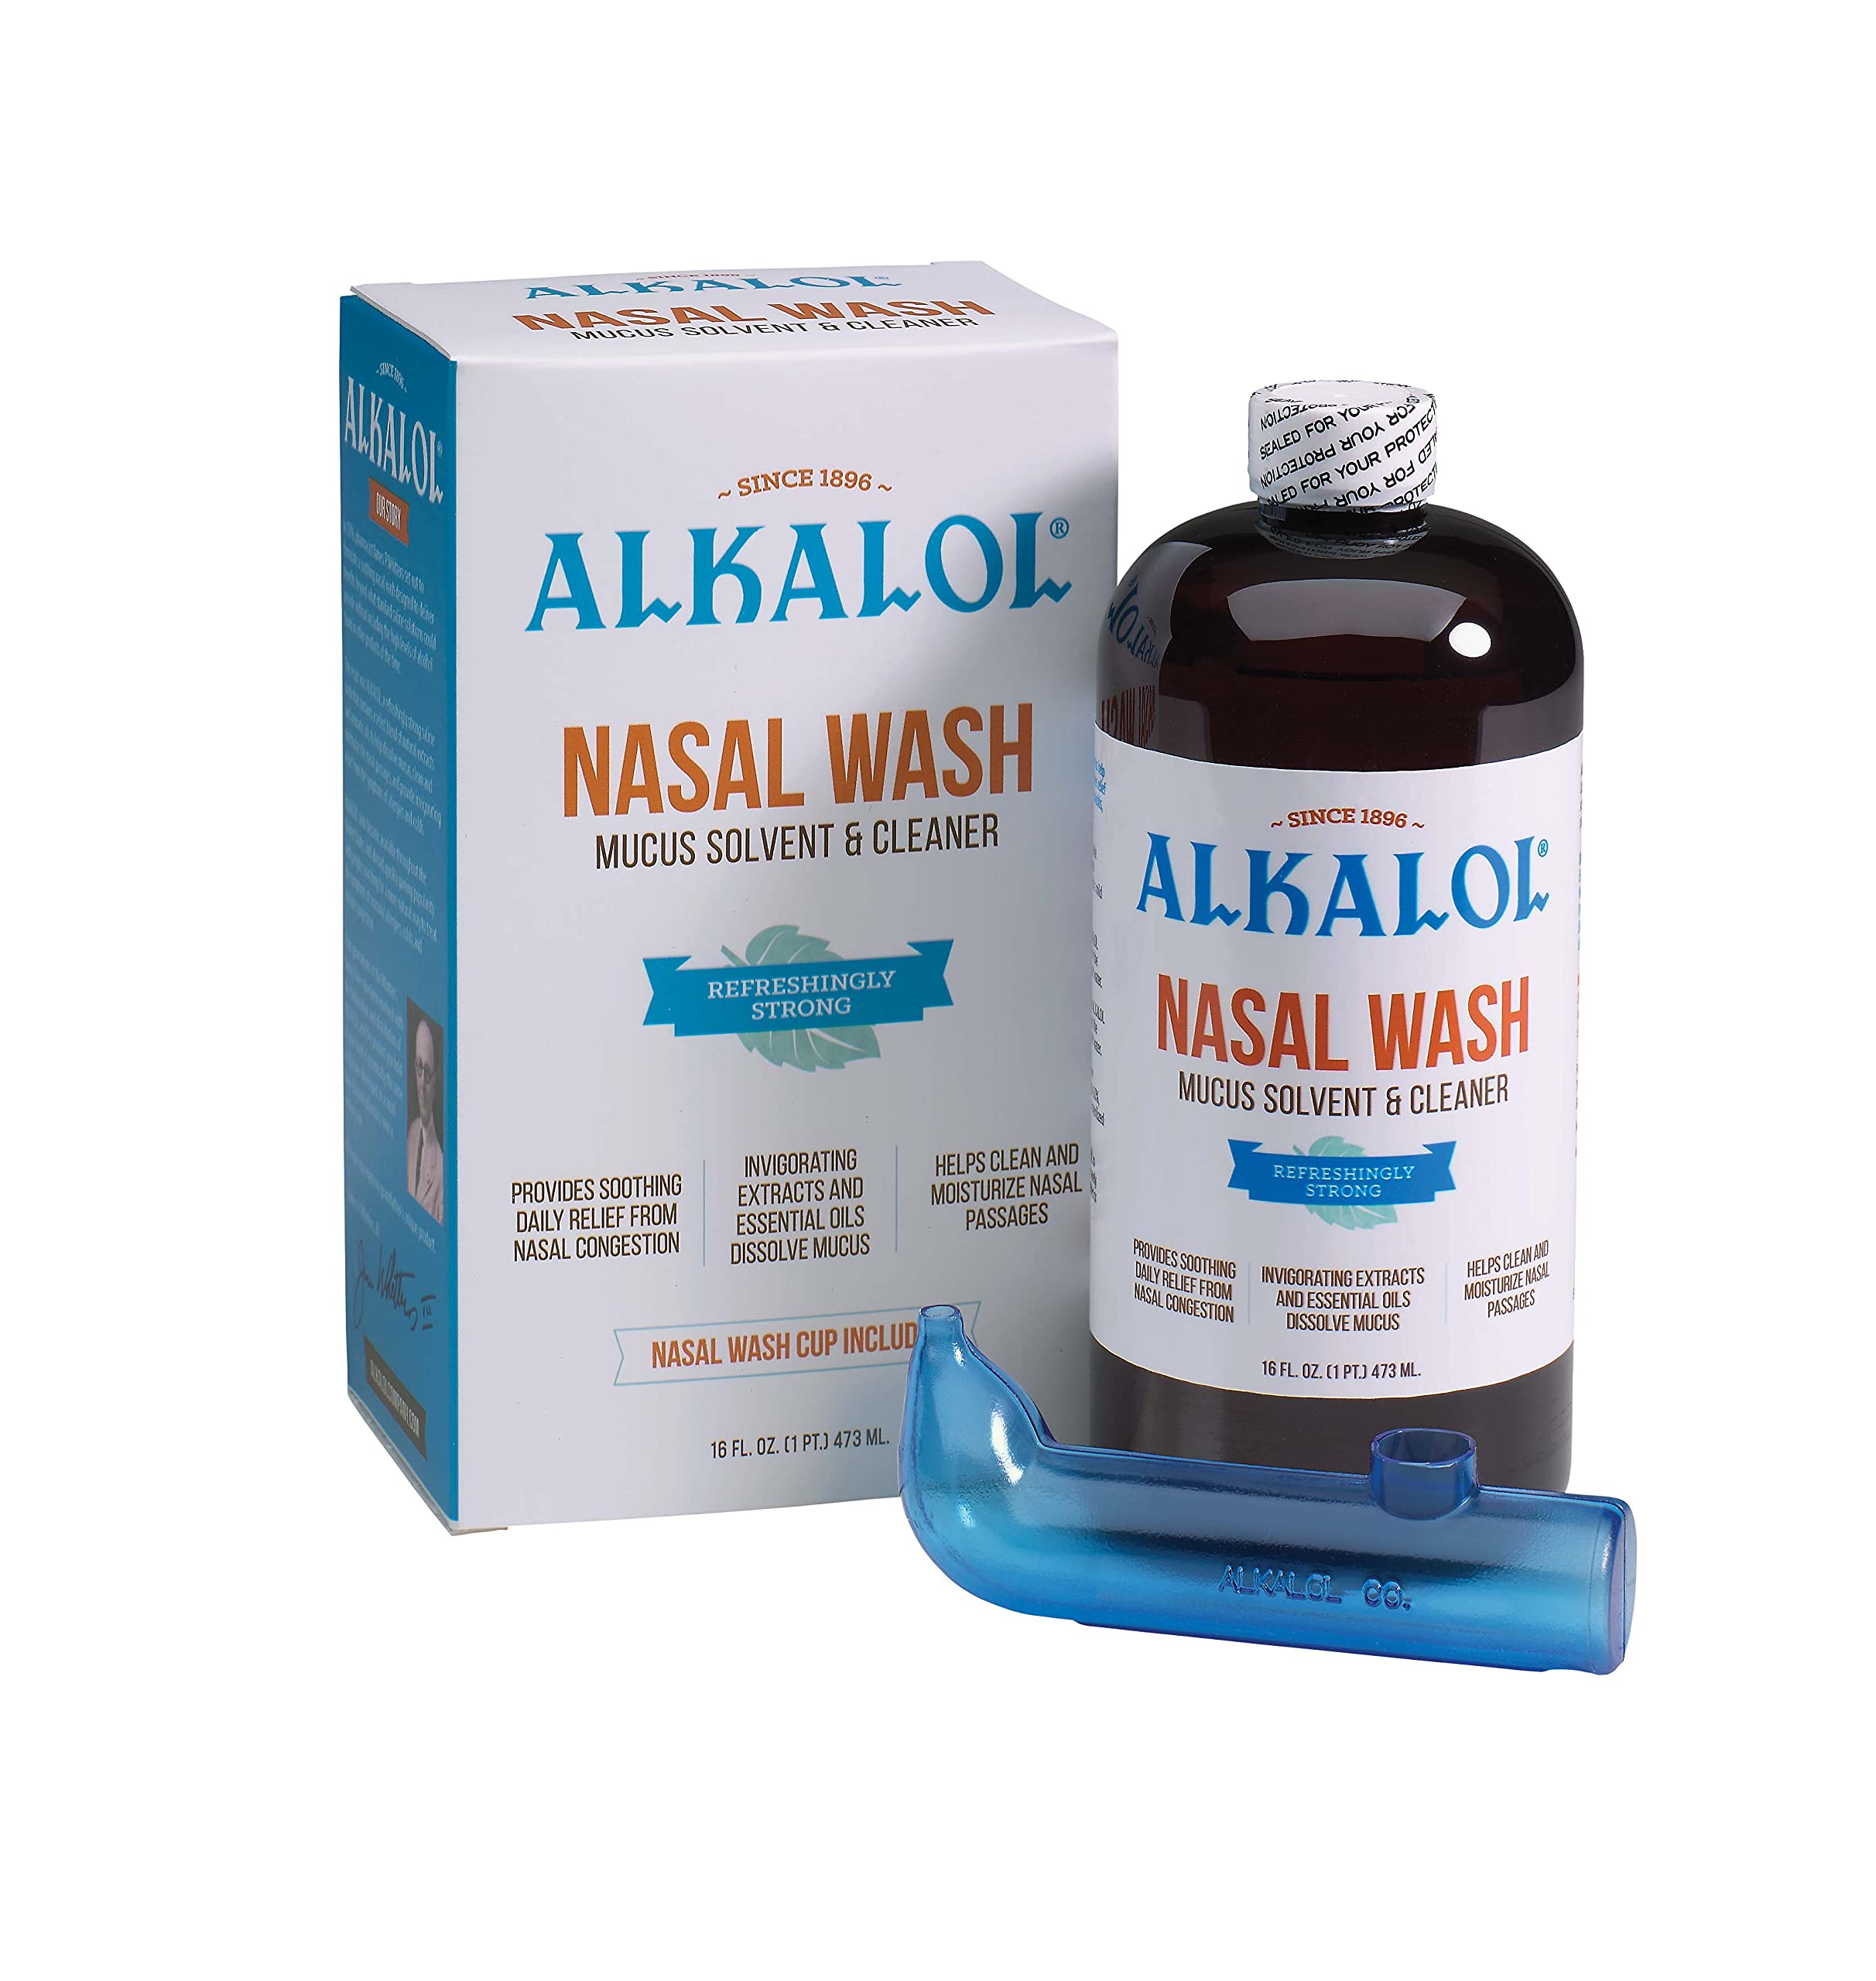 Alkalol - A Natural Soothing Nasal Wash, menthol, 2 Piece Set 1 Count